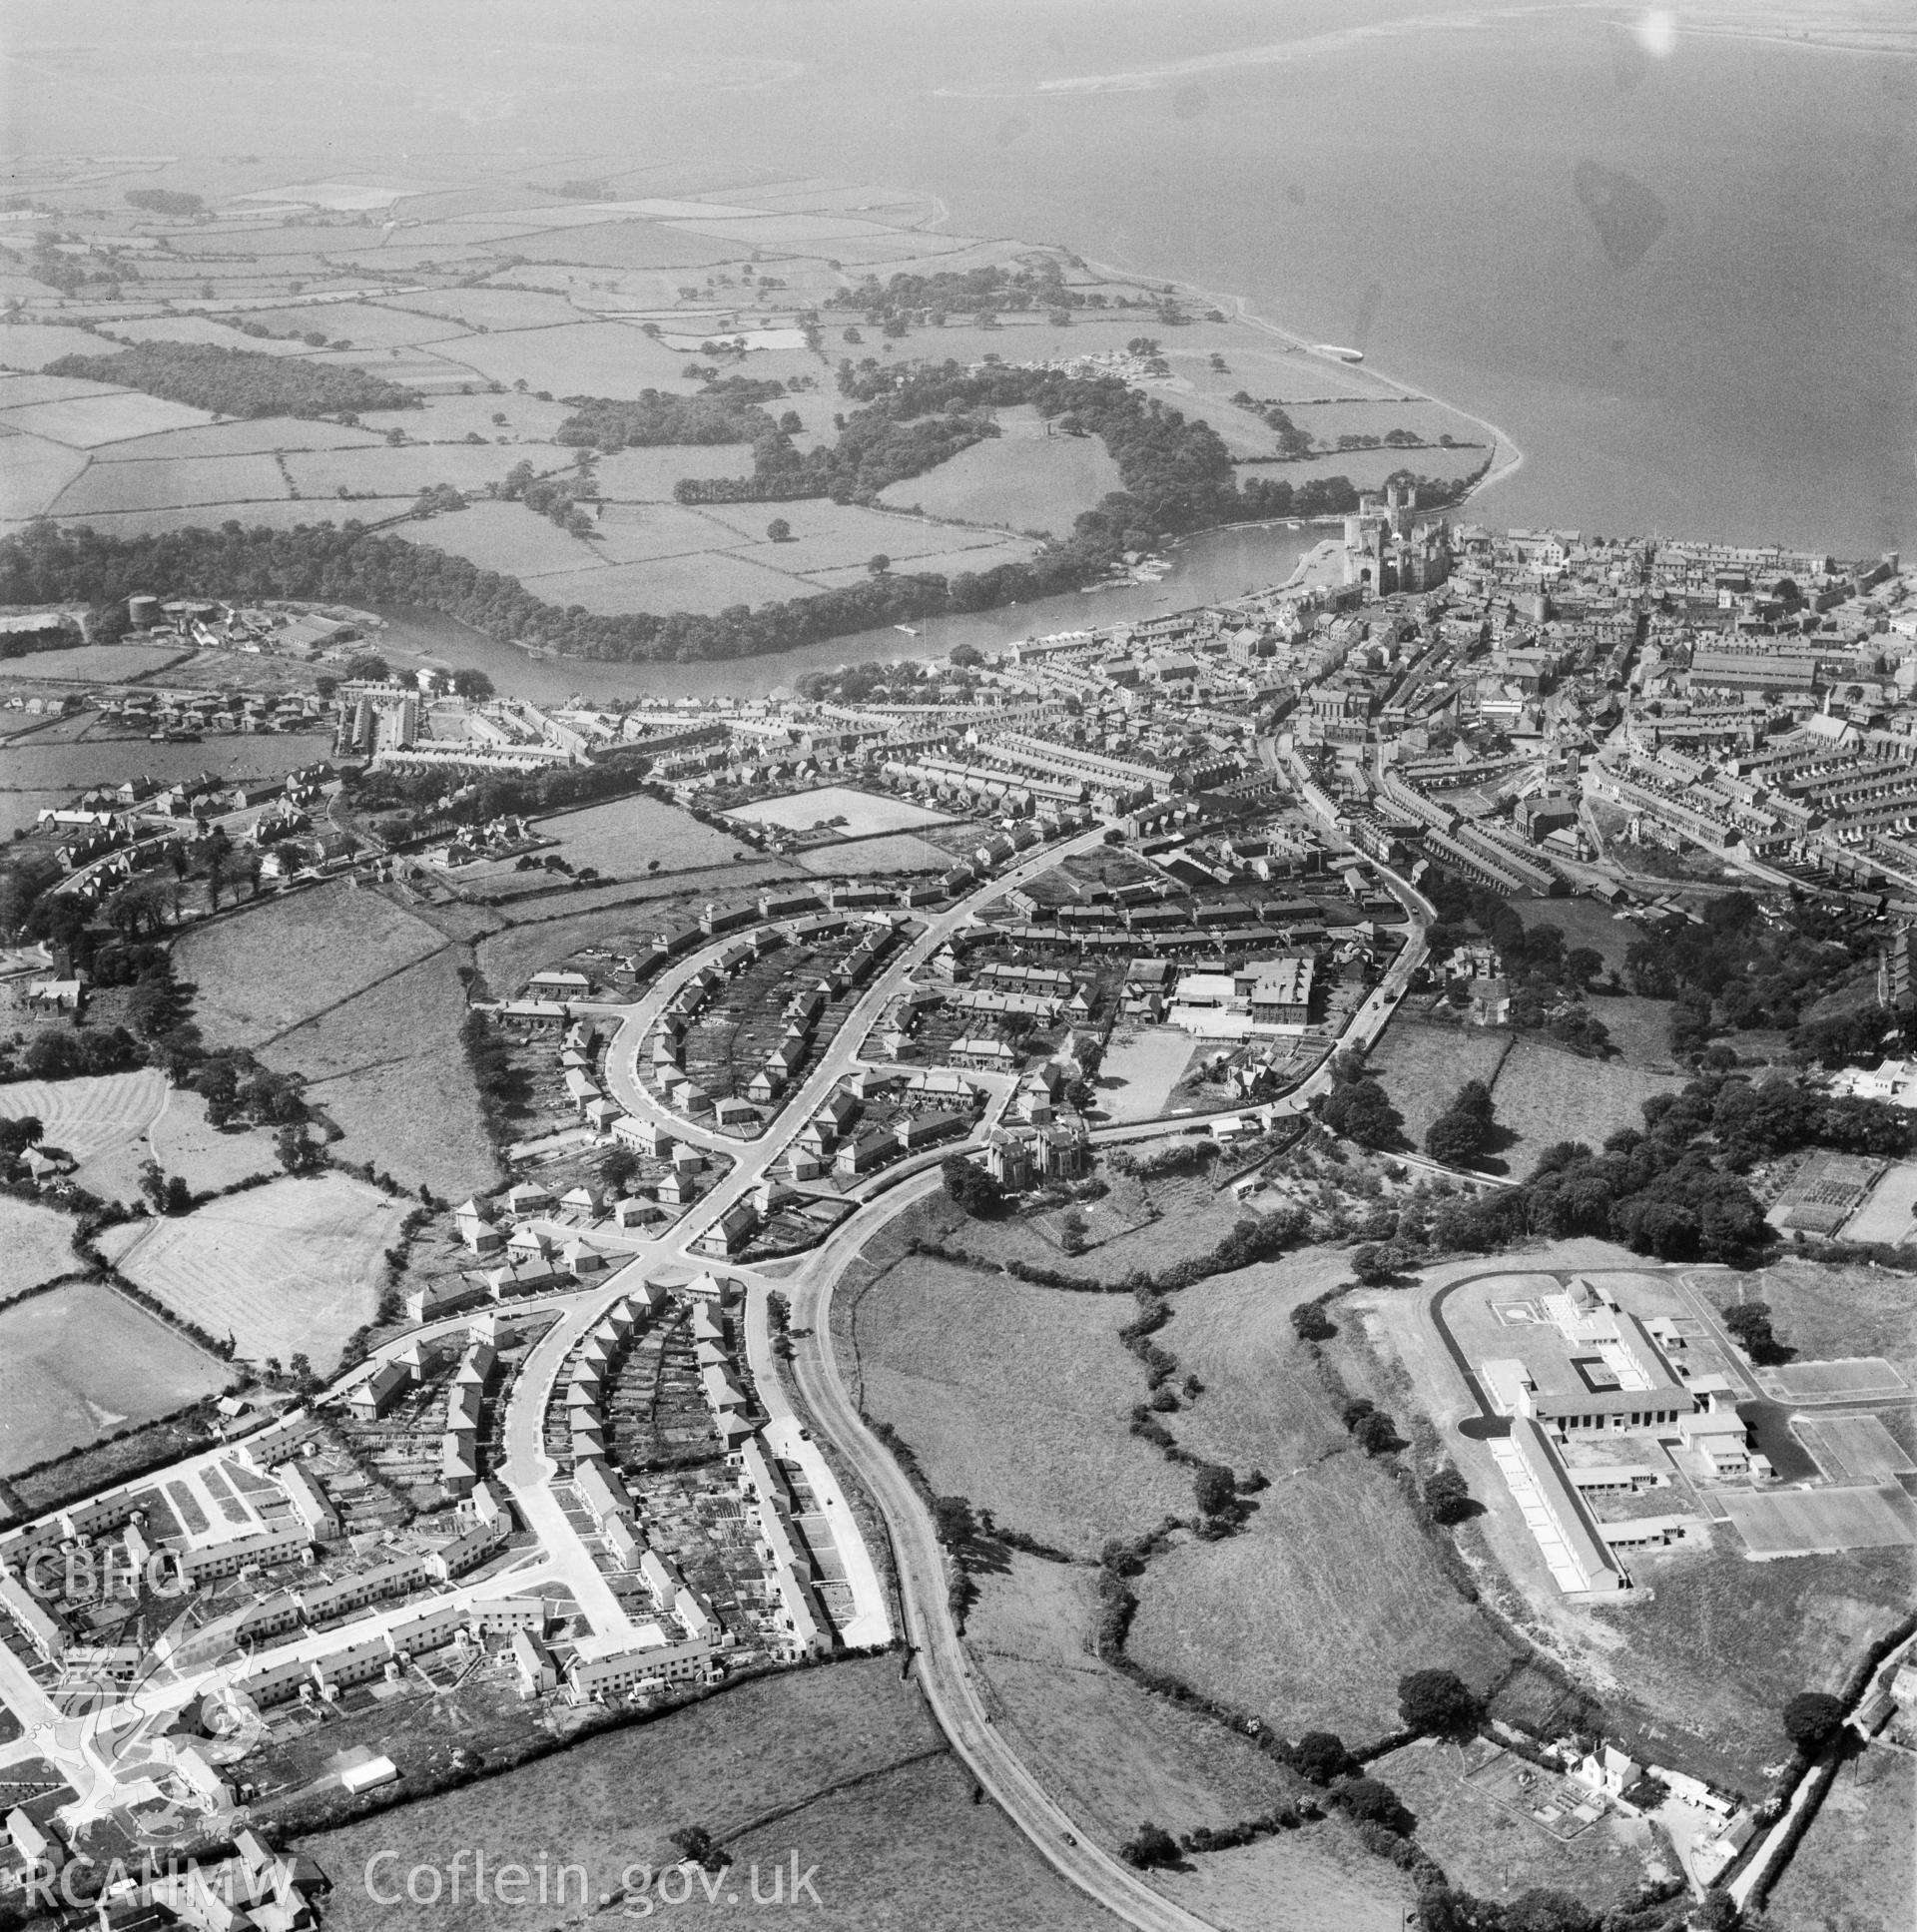 General view of Caernarfon showing Ysgol Maesincla school and new housing